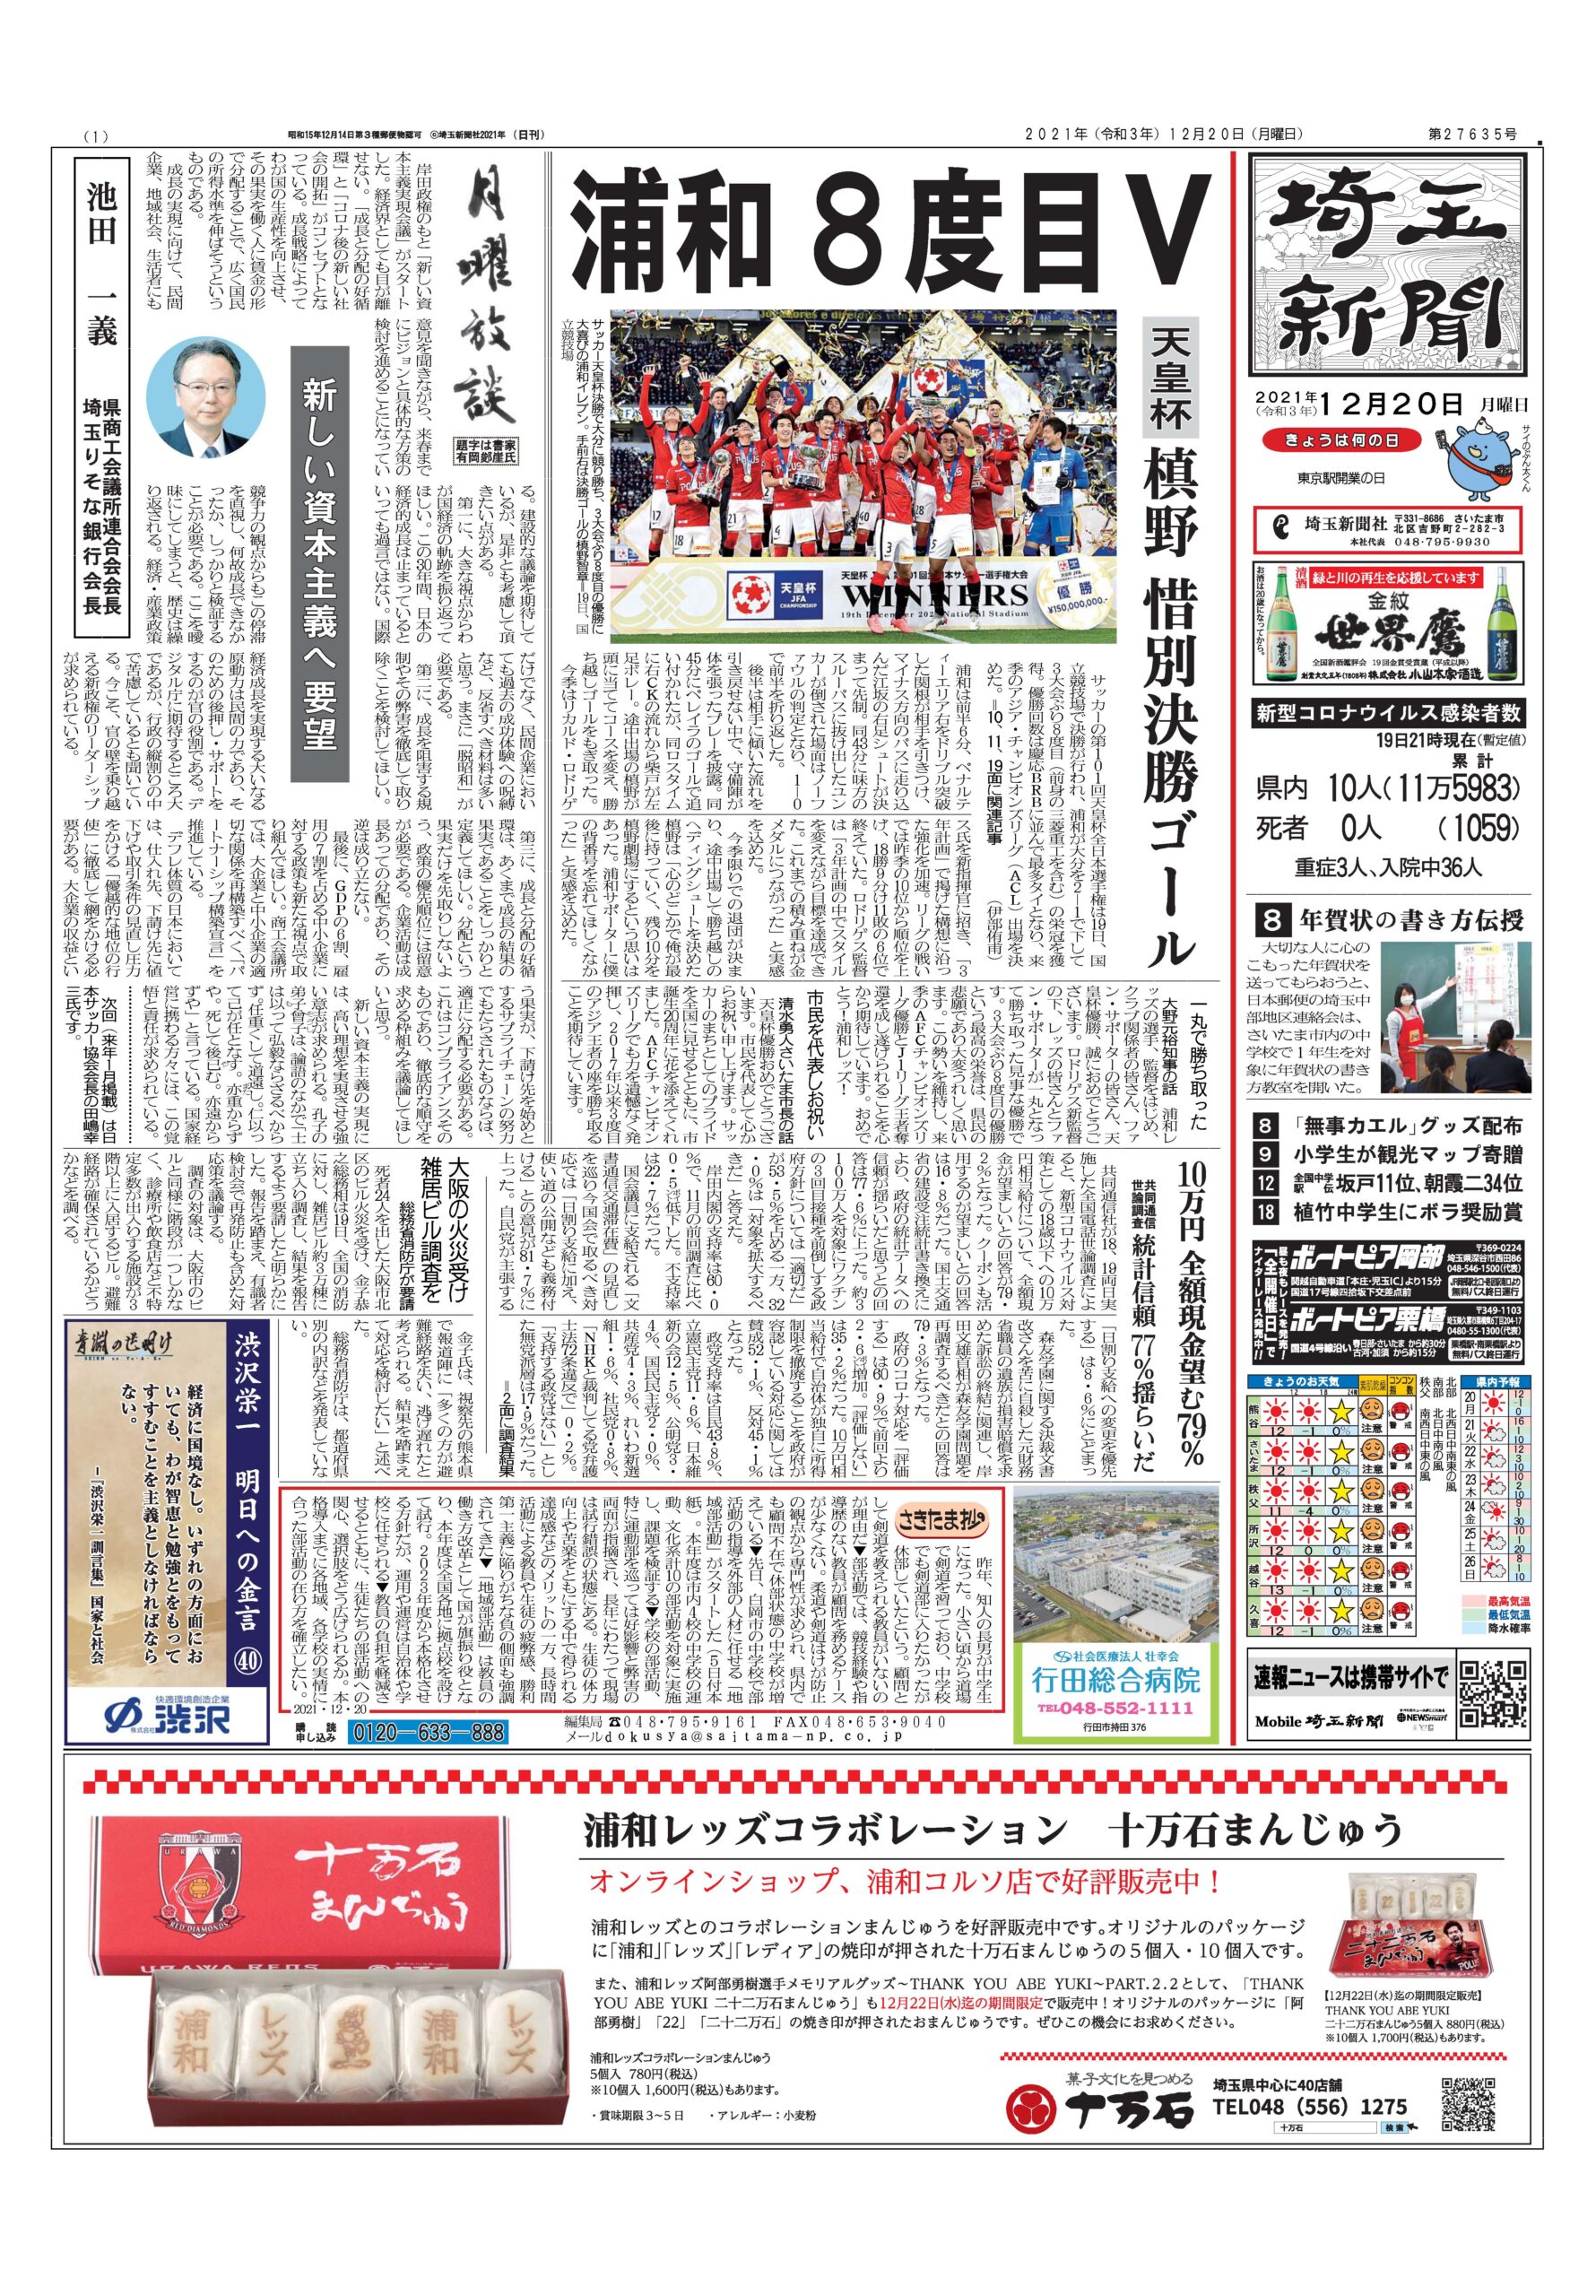 埼玉新聞２０２１年１２月２０日(月)の朝刊で浦和レッズコラボレーションまんじゅう、二十二万石まんじゅうが紹介されました。 イメージ